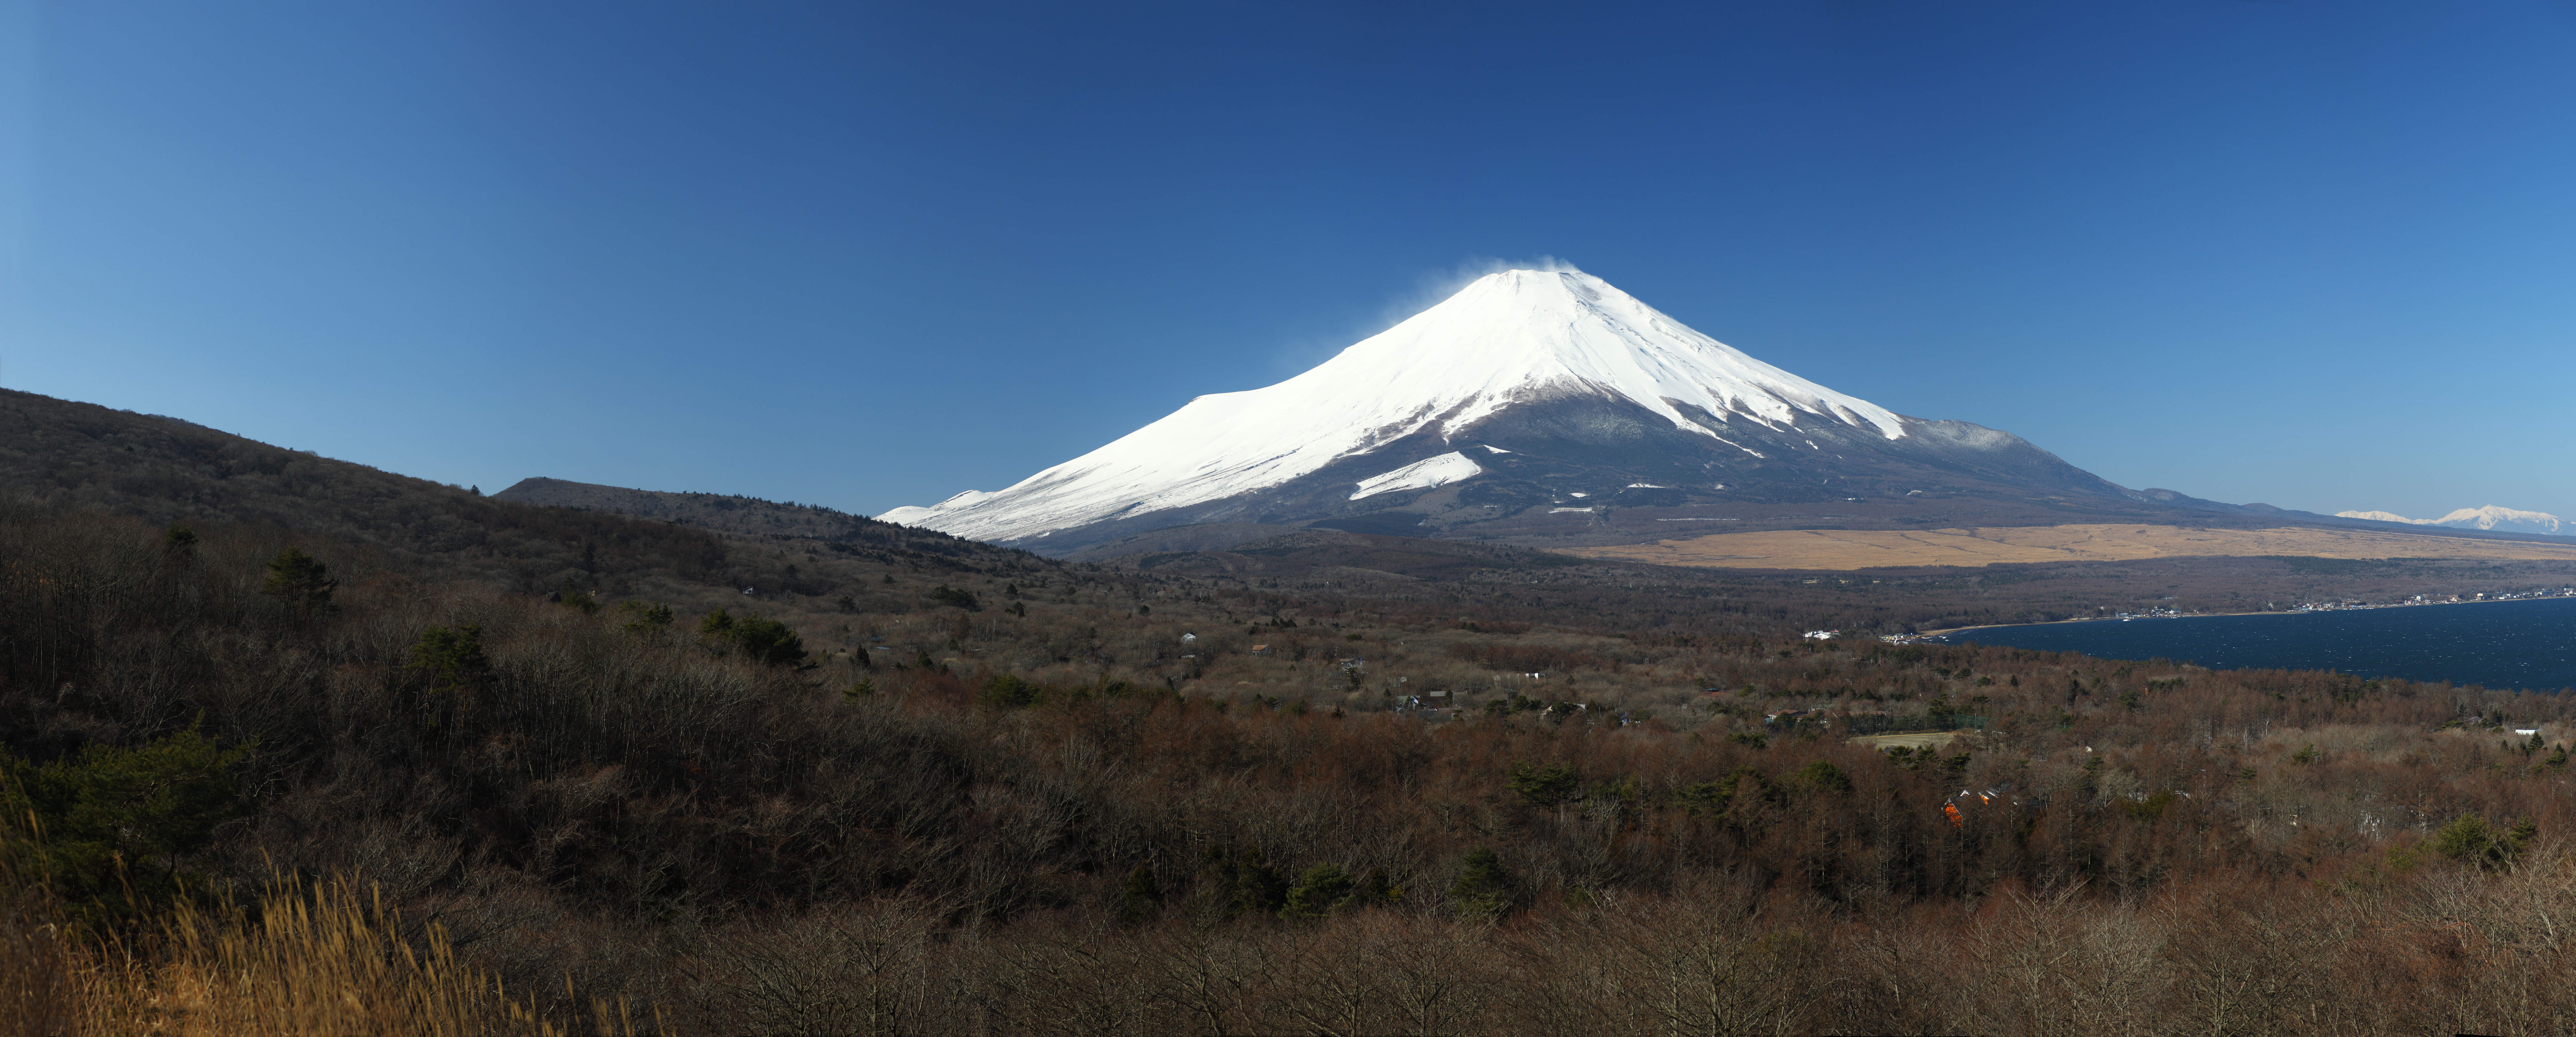 , , , , ,  .,Mt. Fuji, Mt. Fuji, Yamanakako, , 